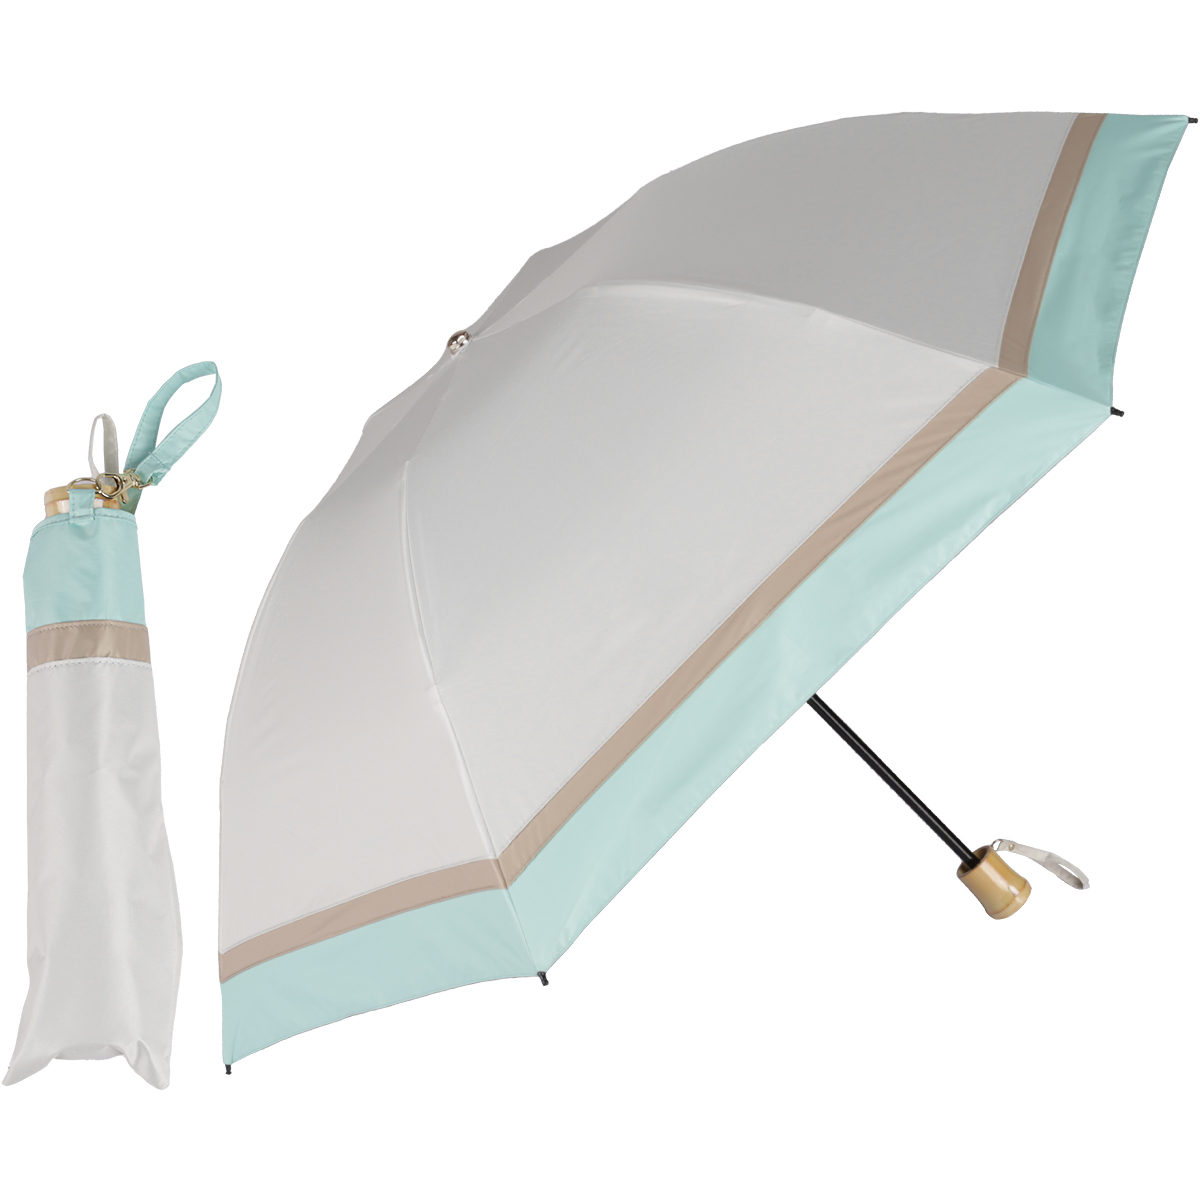 日傘 折りたたみ 完全遮光 晴雨兼用折りたたみ傘 軽量 折り畳み傘 逆さ傘 3段式 レディース 大き...